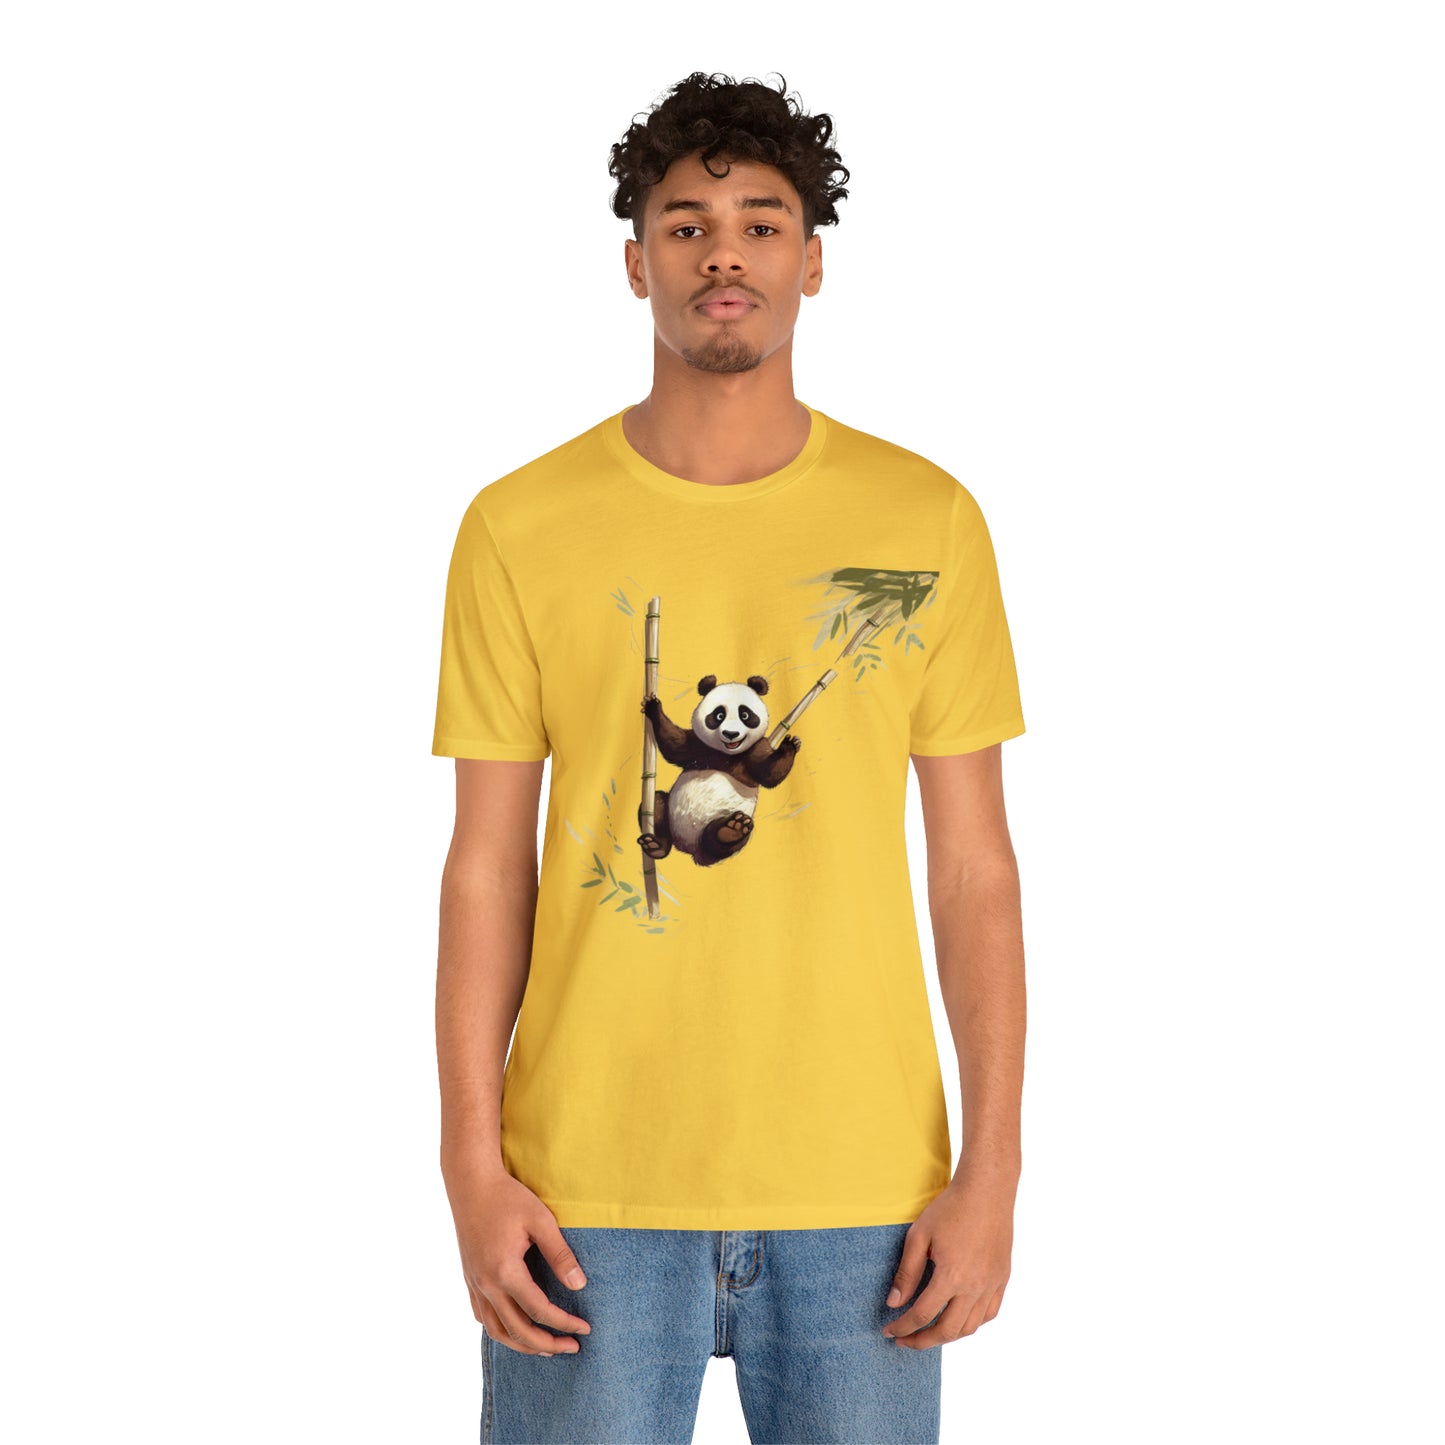 Panda Bungee Jumping Tee